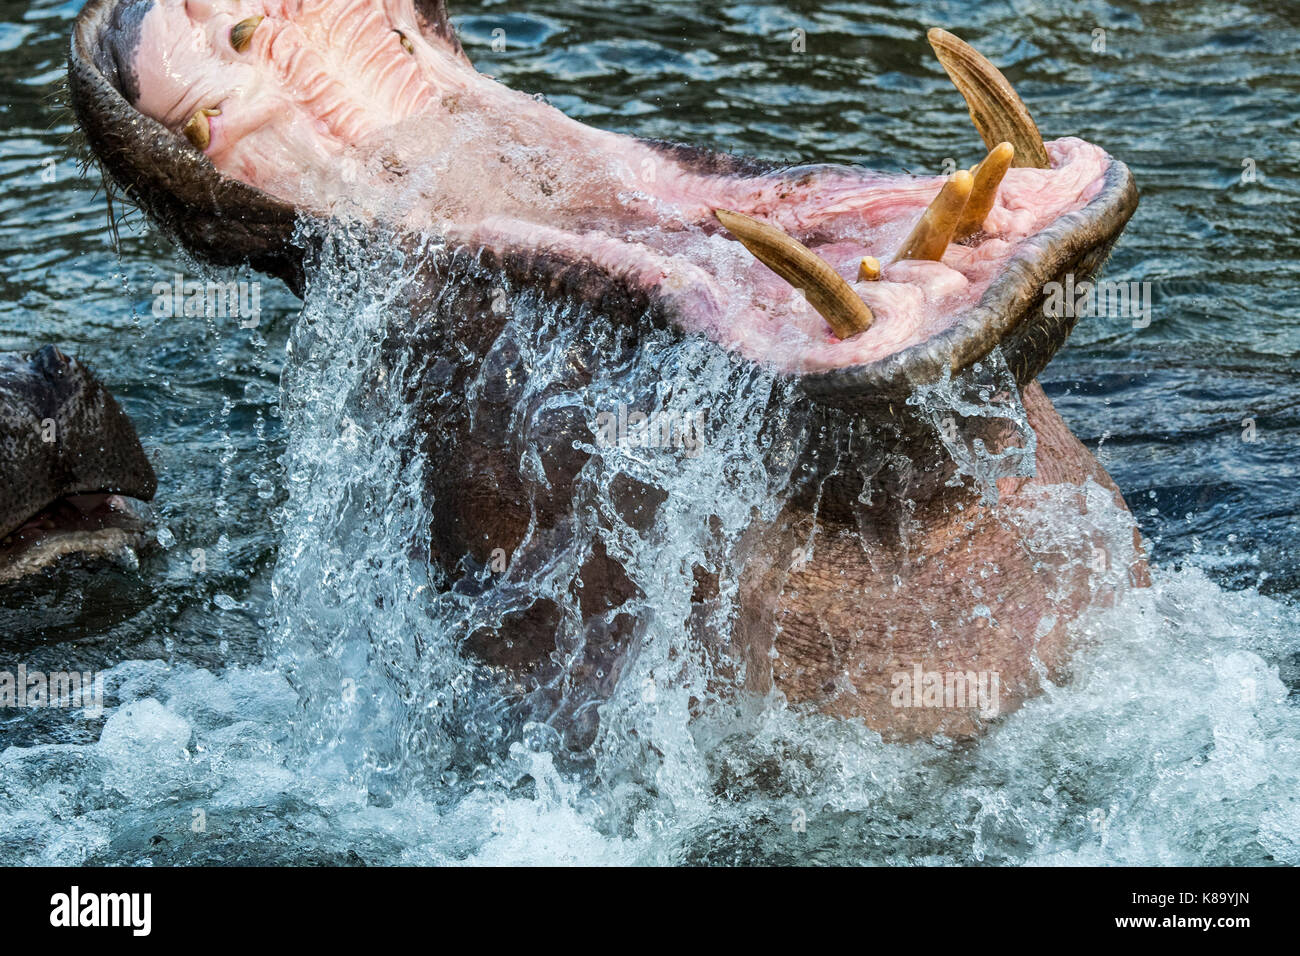 Gemeinsame Flusspferd/ hippo (Hippopotamus amphibius) im See Ansicht des riesigen Zähne und großen Eckzahn Hauer in weit geöffneter Mund Stockfoto